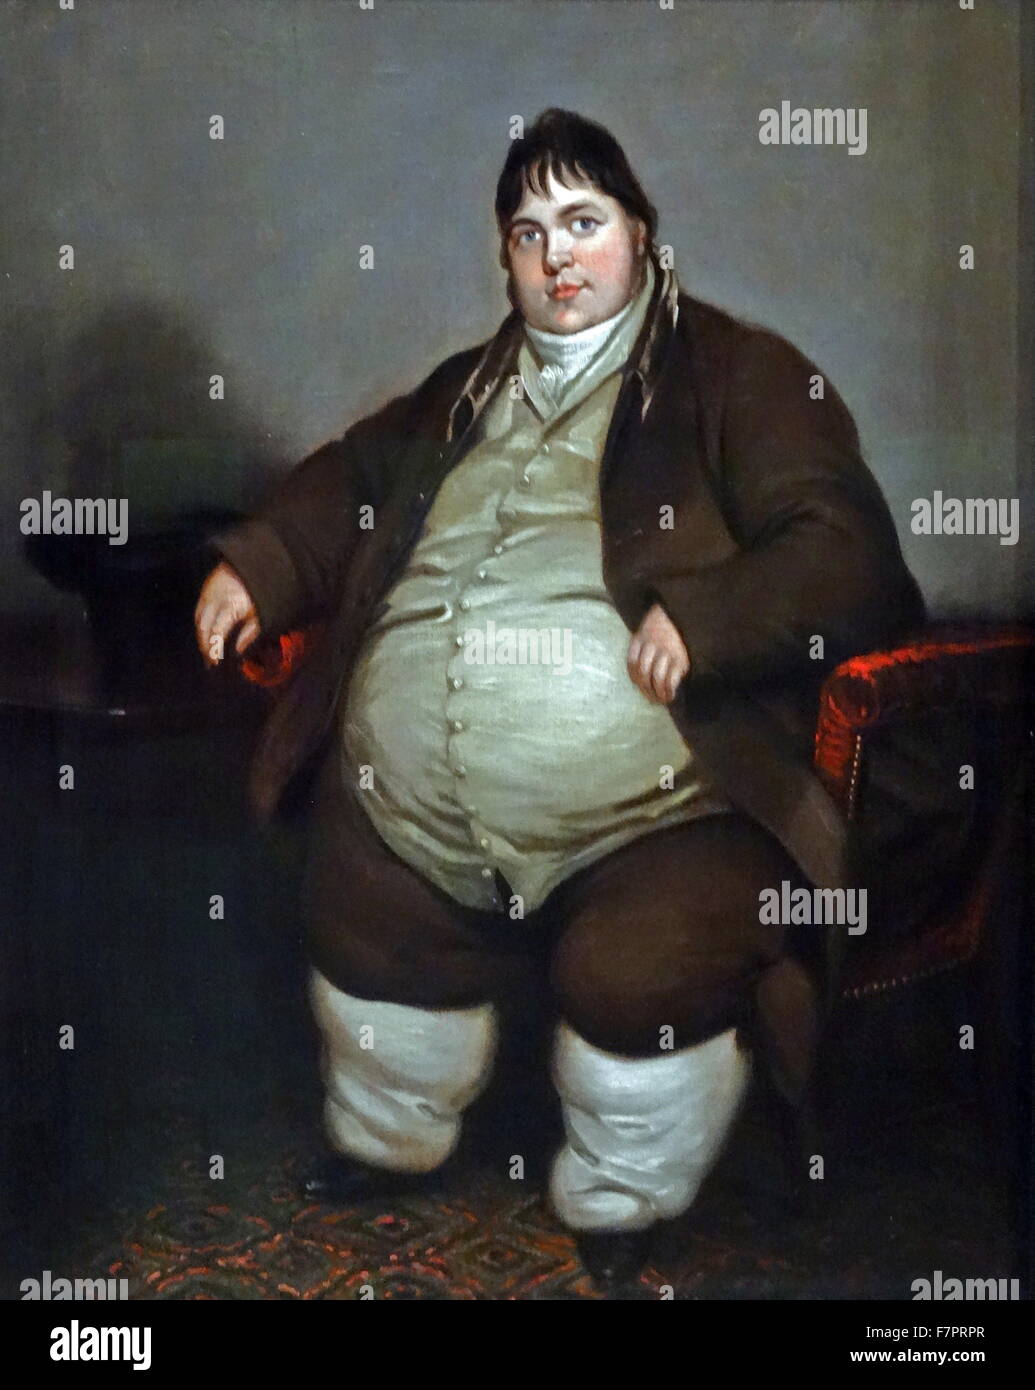 Daniel Lambert (13. März 1770 – 21. Juni 1809) Tier Züchter aus Leicester, England, berühmt für seine ungewöhnlich groß. Im Jahre 1805 Lambert wog 50 Stein (700 lb; 318 kg), und war der schwerste authentifizierte Person bis zu diesem Zeitpunkt in der aufgezeichneten Geschichte geworden Stockfoto